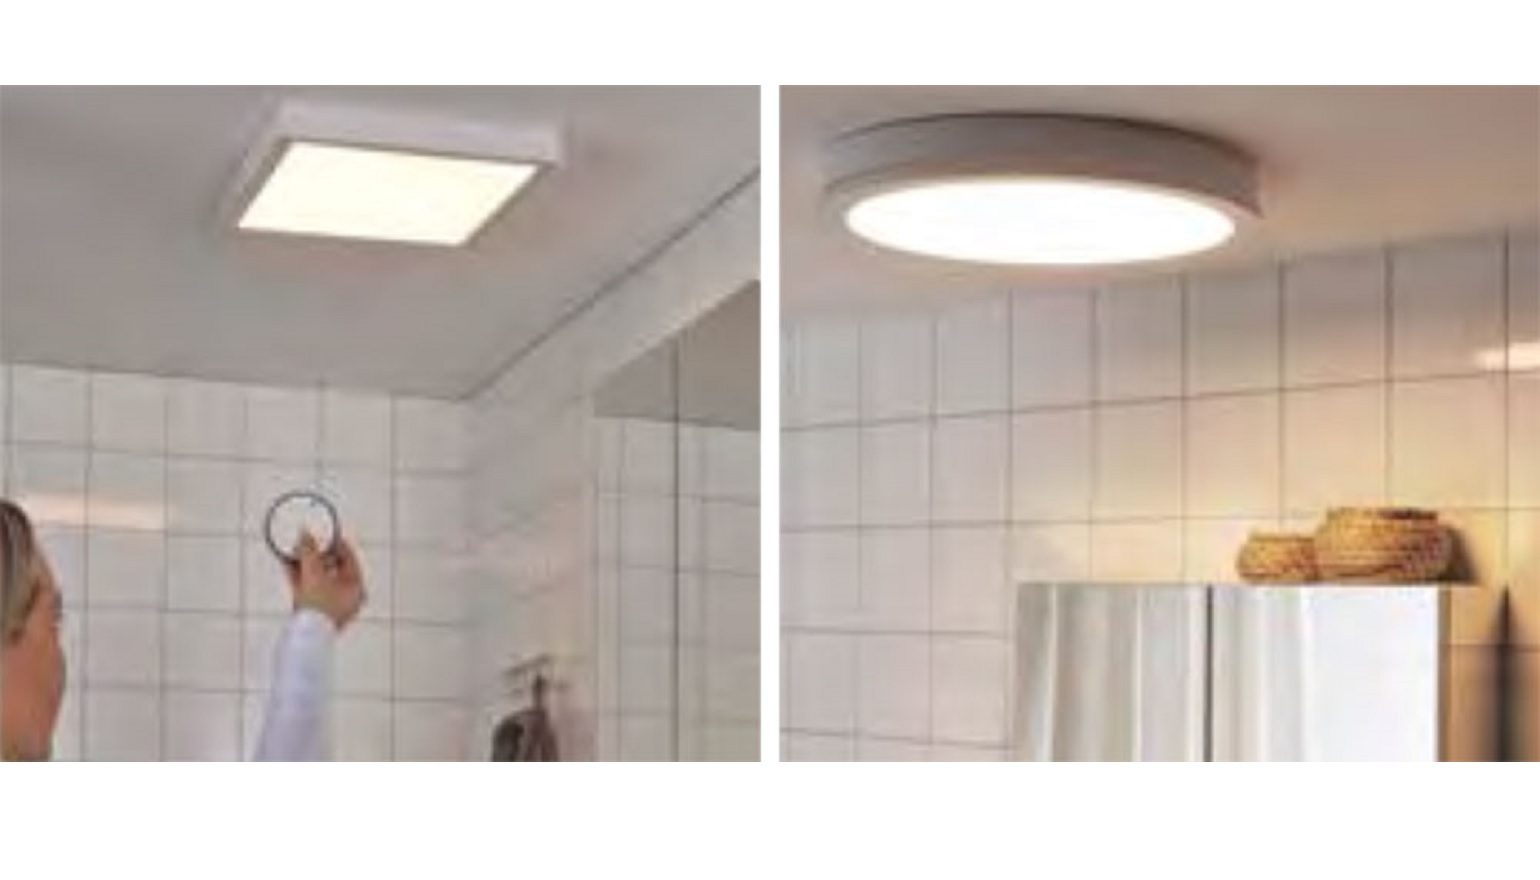 Vul in Slepen Uitgang IKEA komt met nieuwe slimme lampen voor in de badkamer' | FWD